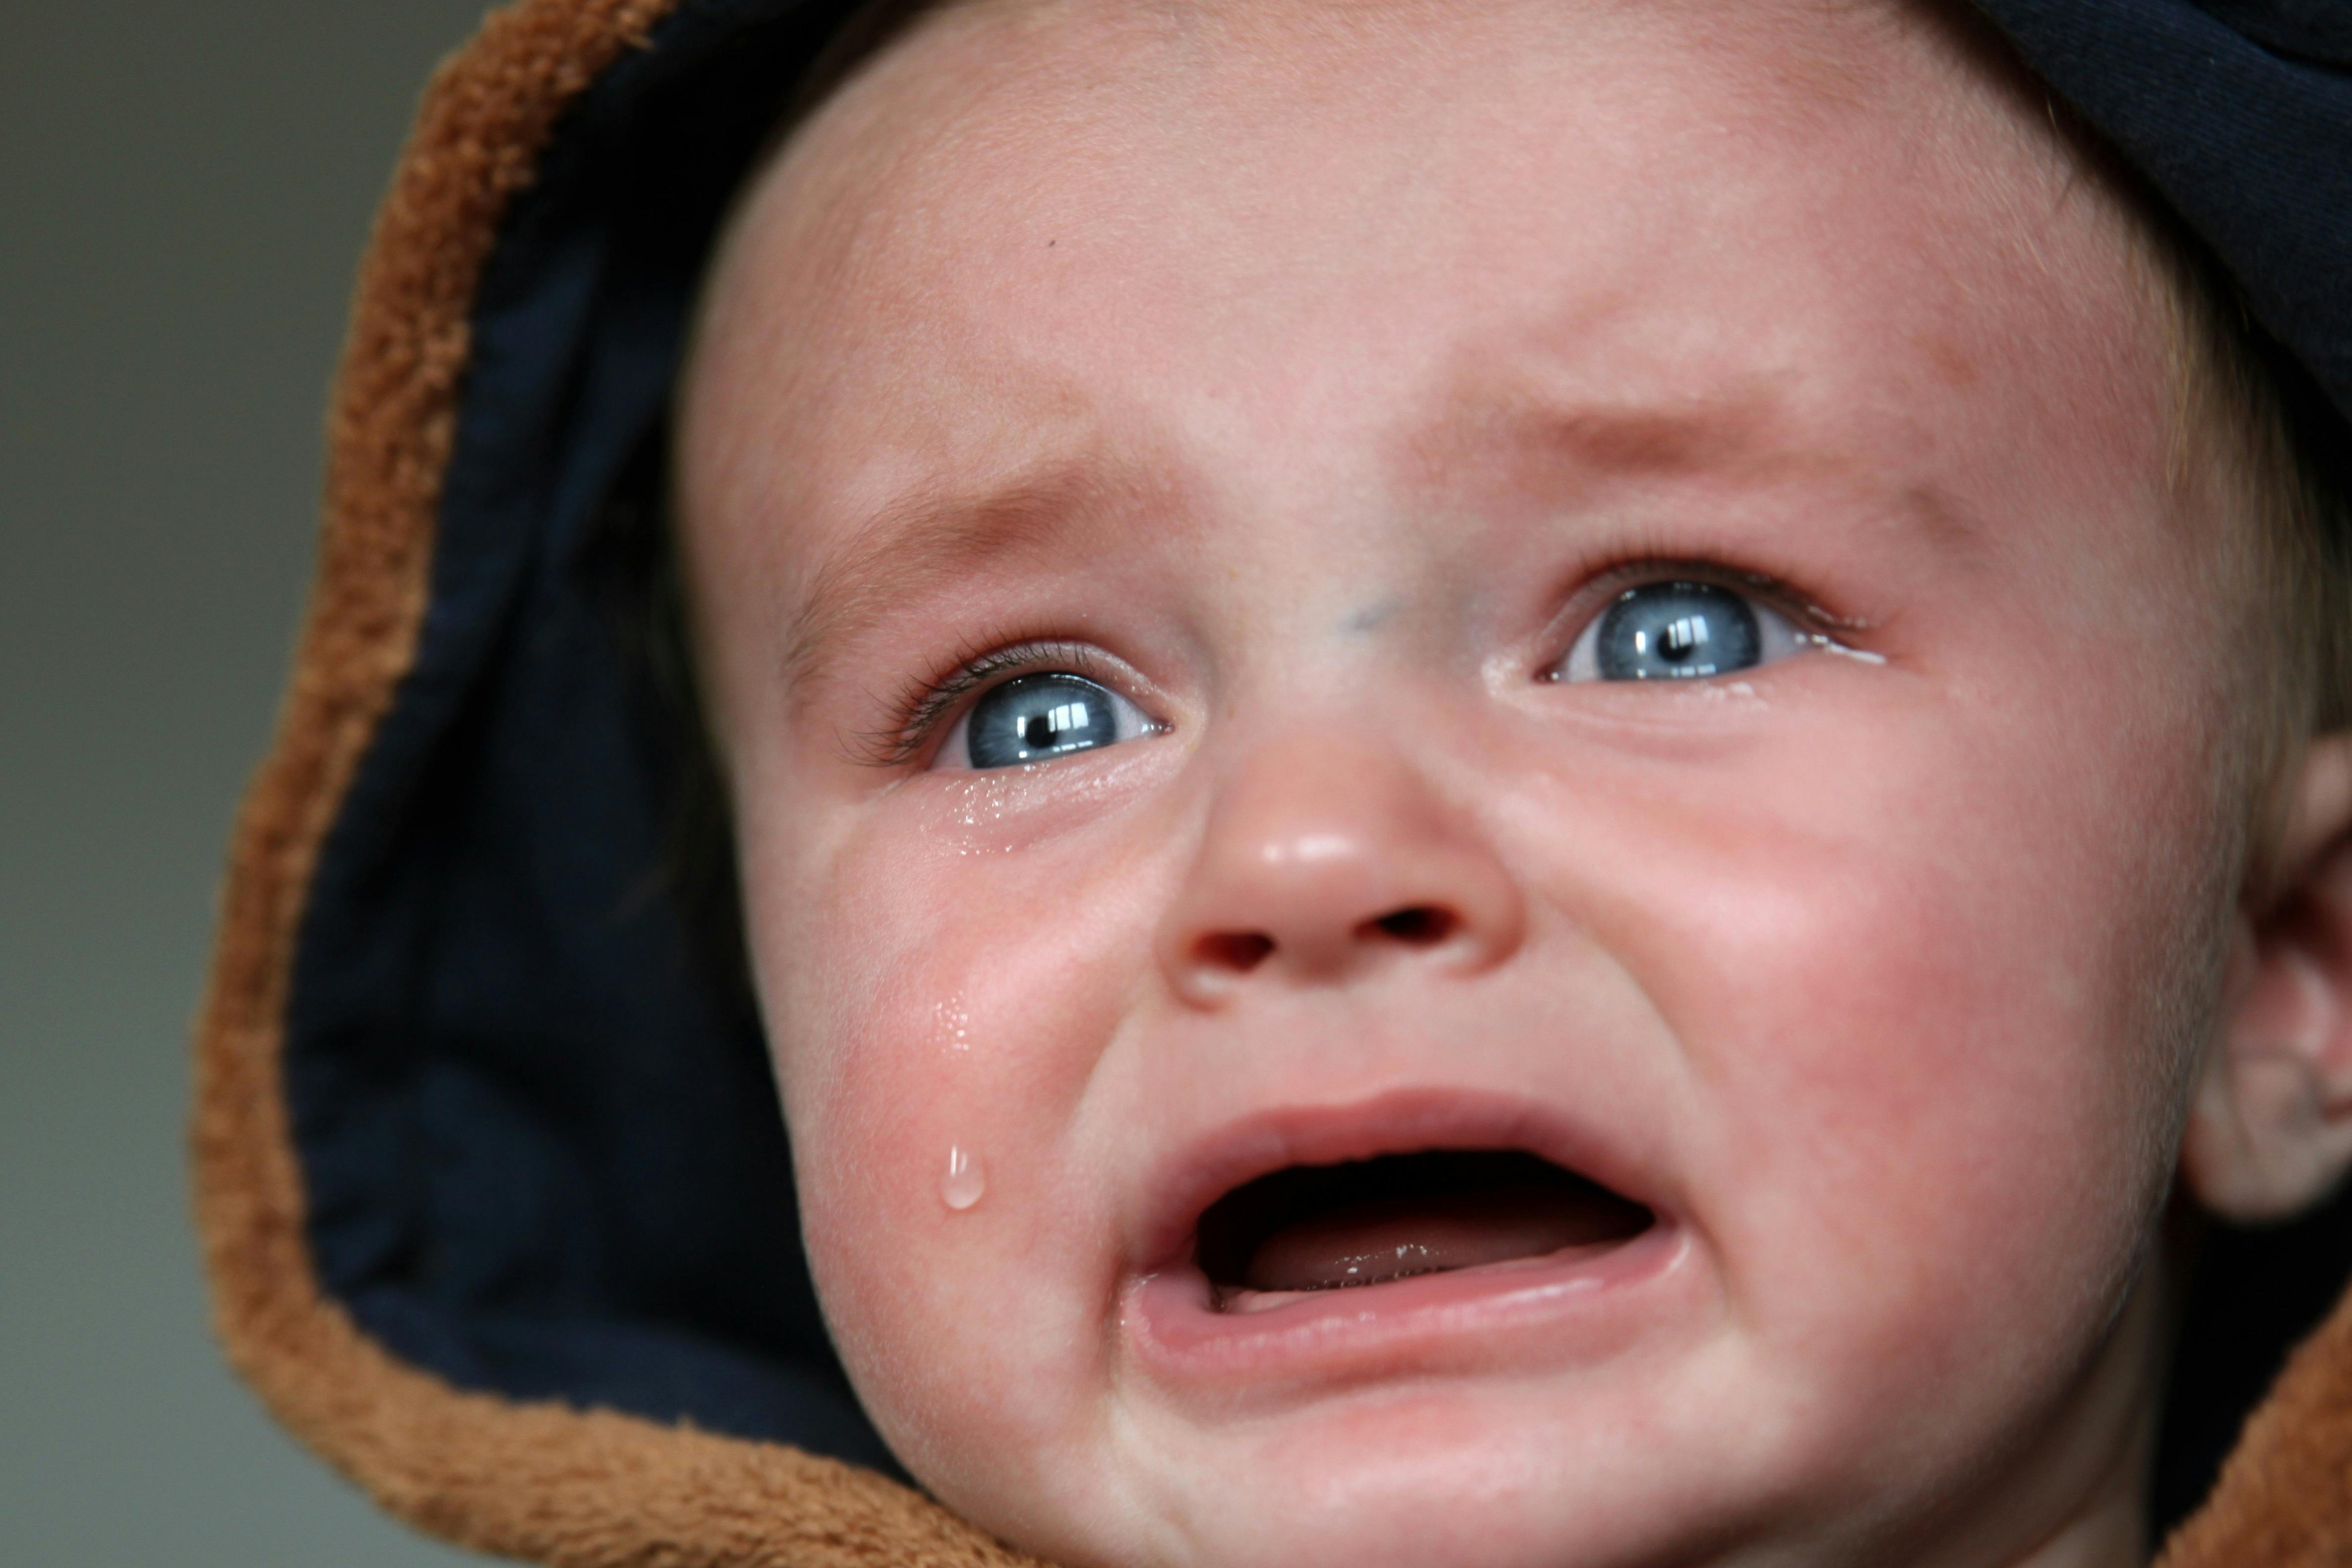 Ihr Baby weinen lassen - ja oder nein